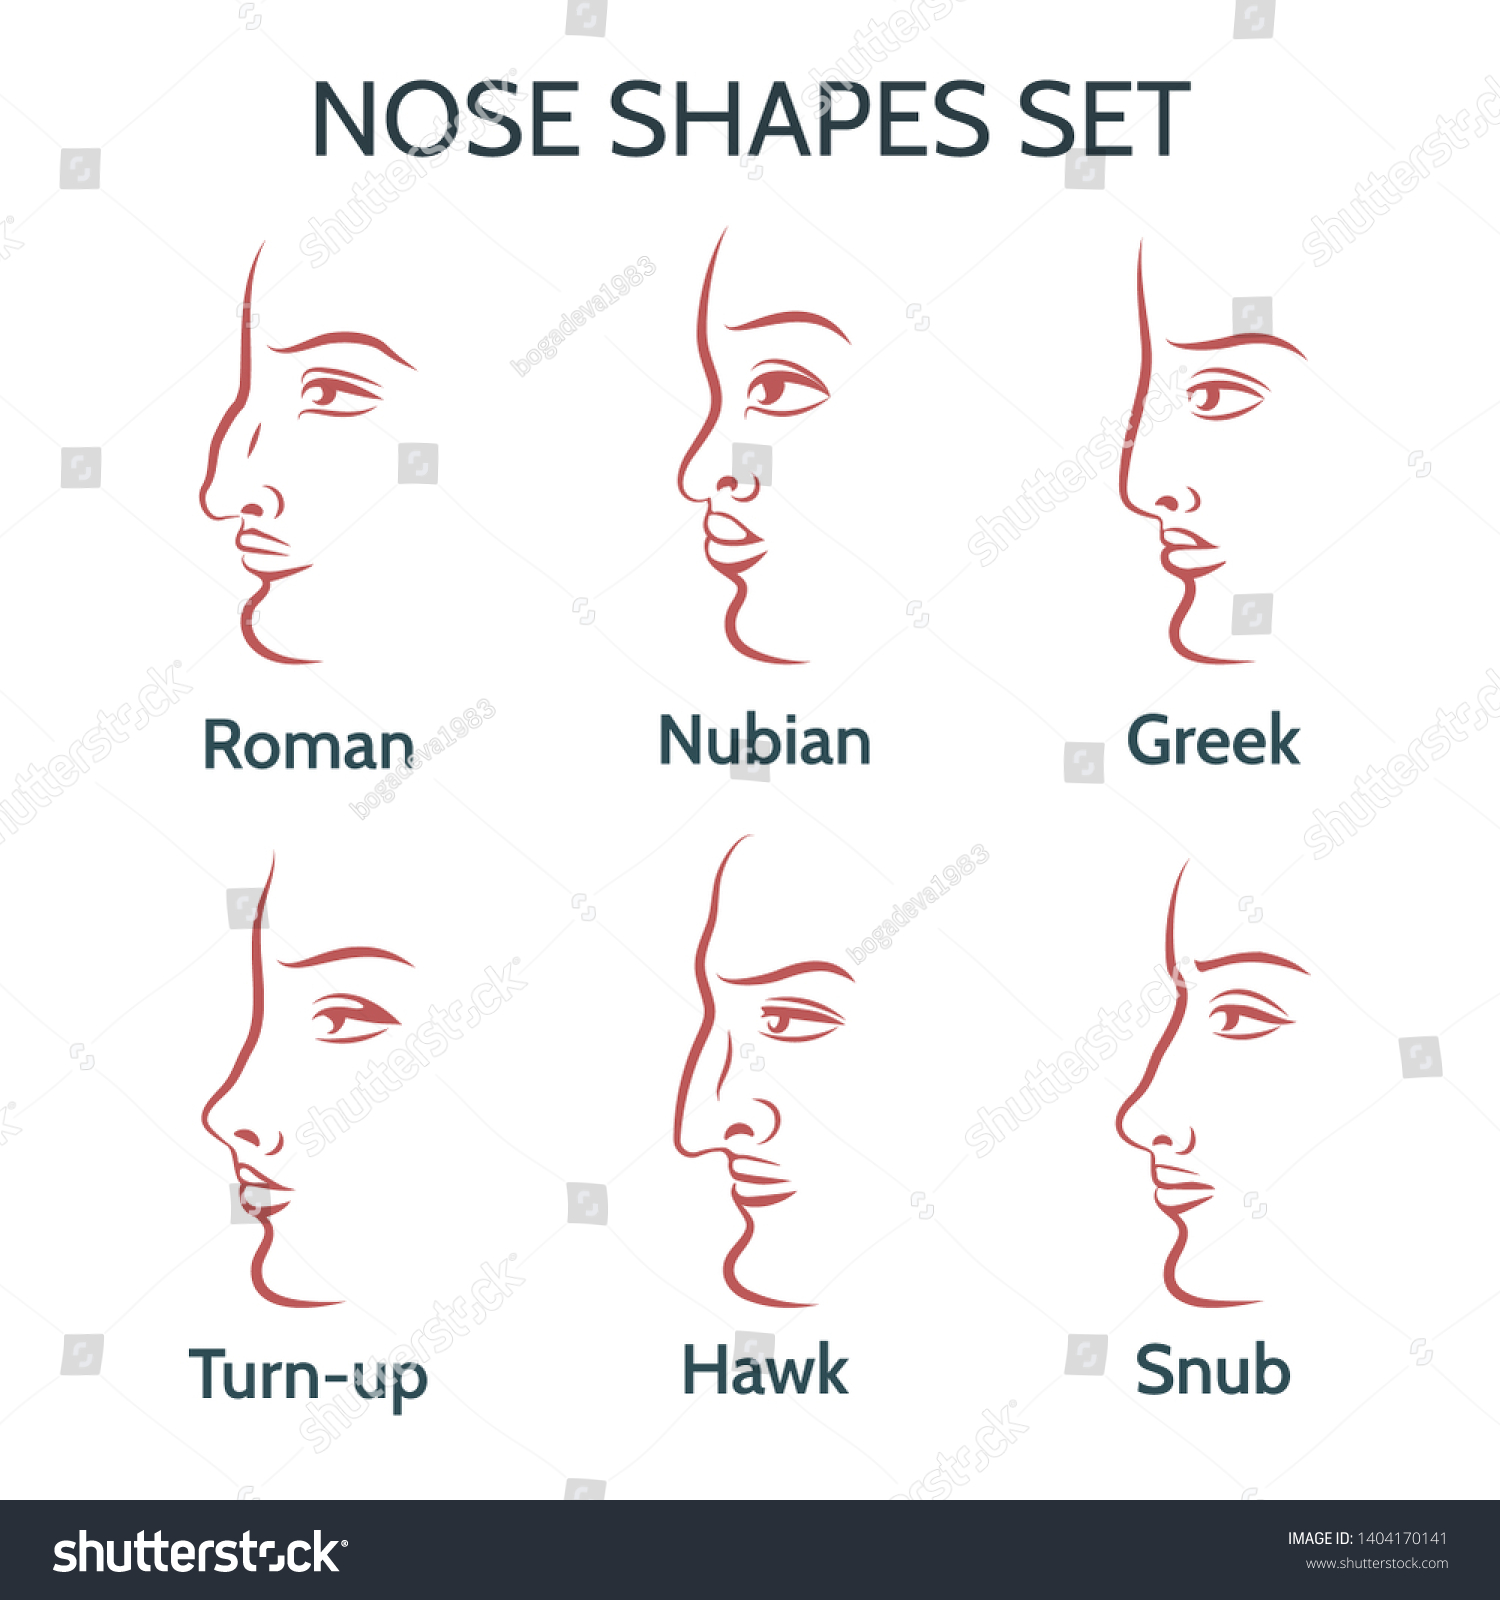 Формы носа и их названия